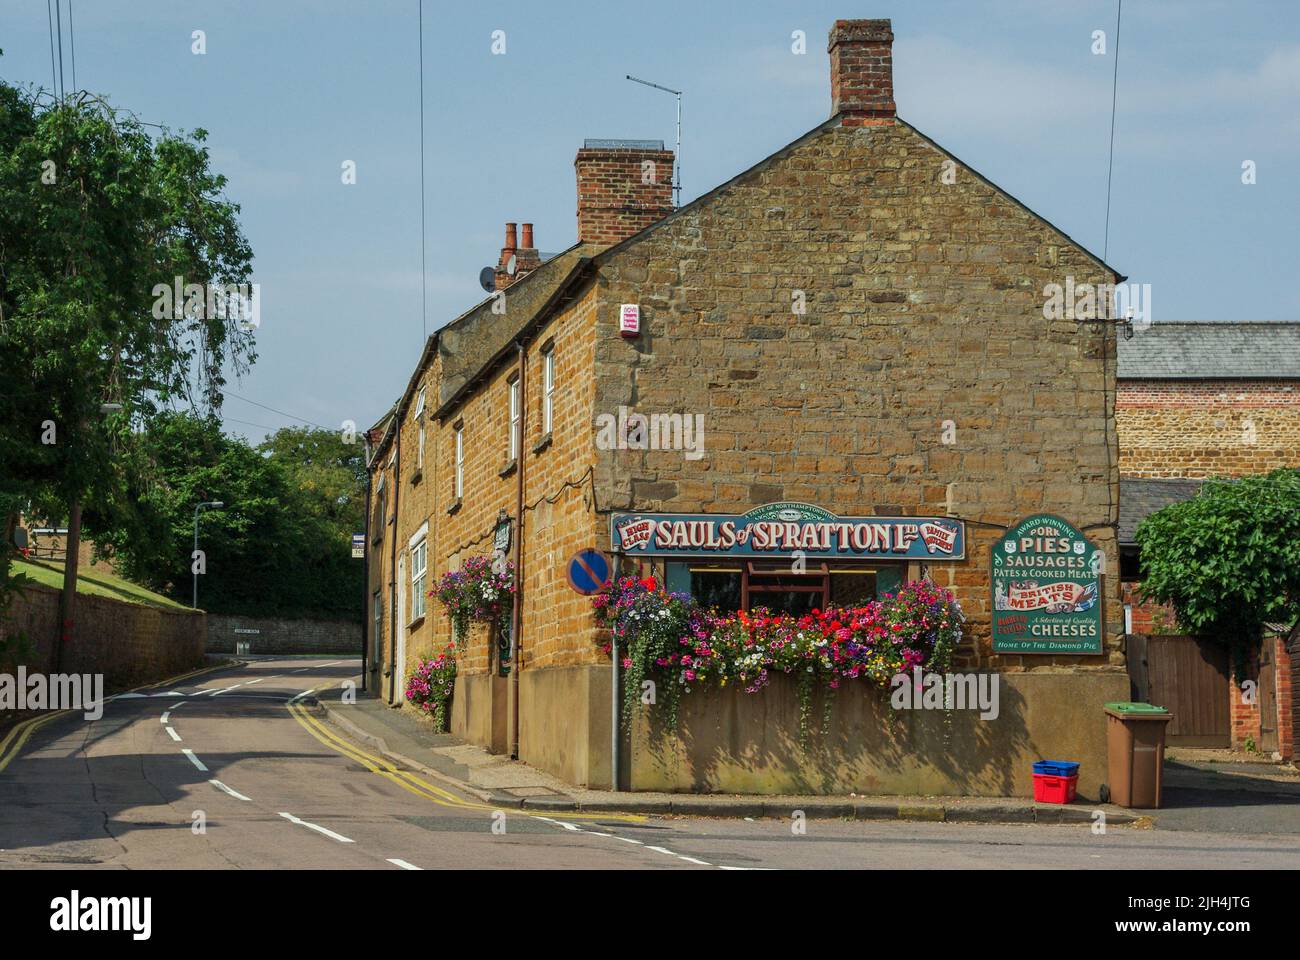 Escena callejera en verano en el bonito pueblo de Spratton, Northamptonshire, Reino Unido; edificios de piedra de color miel incluyendo la carnicería de Sauls. Foto de stock